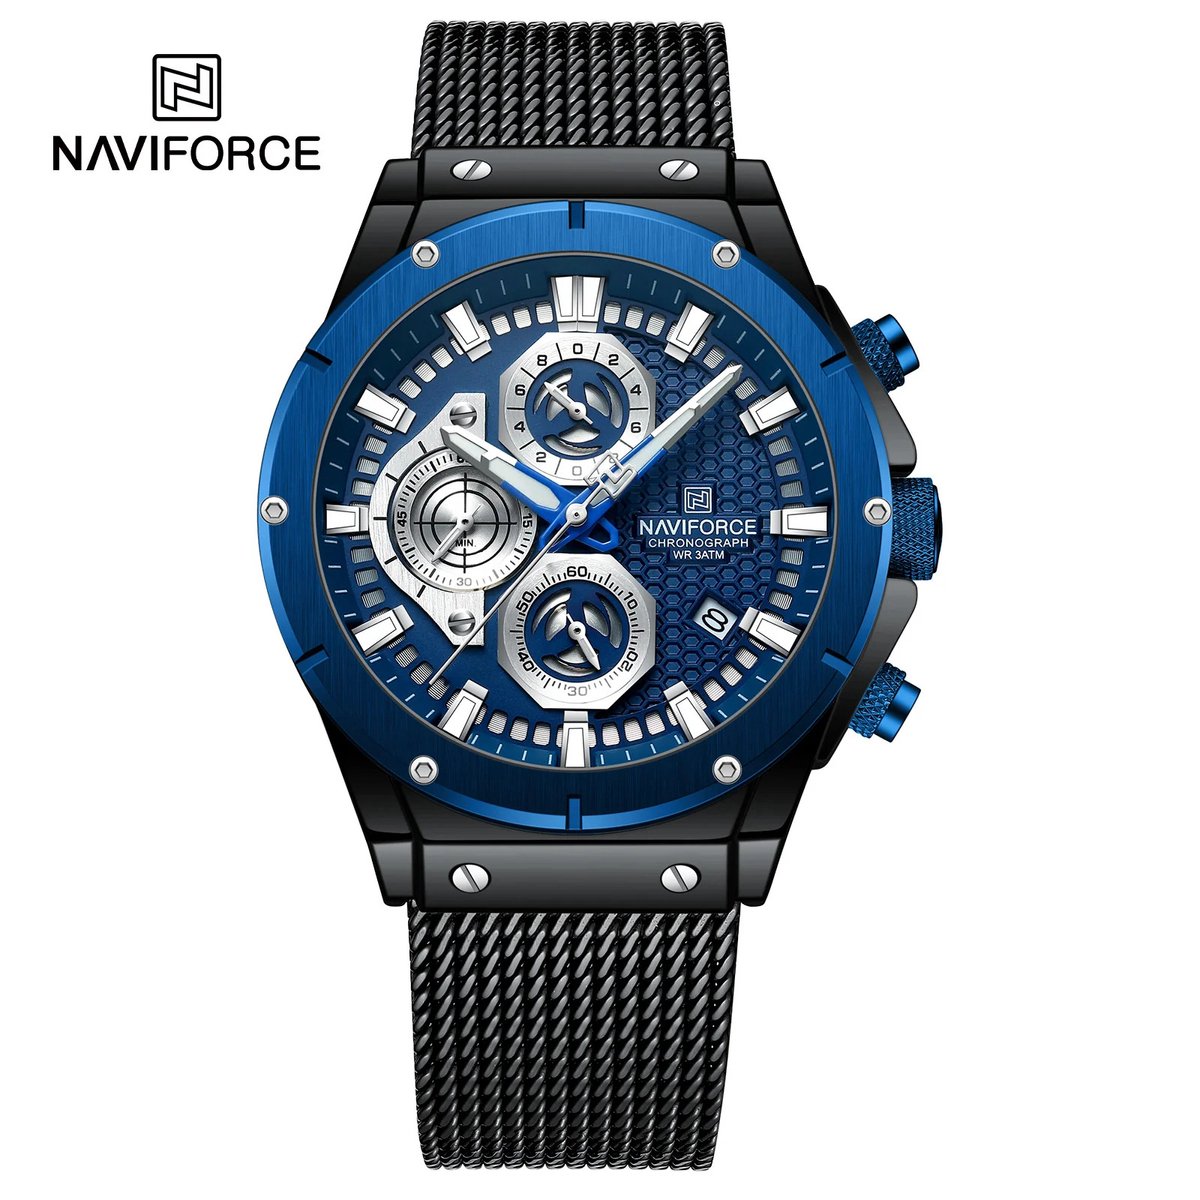 NAVIFORCE horloge voor mannen, met zwarte metalen polsband, blauwe met zwarte horlogekast en grijze wijzerplaat met in het donker oplichtende wijzers ( model 8027S BBE ), verpakt in een mooie geschenkdoos